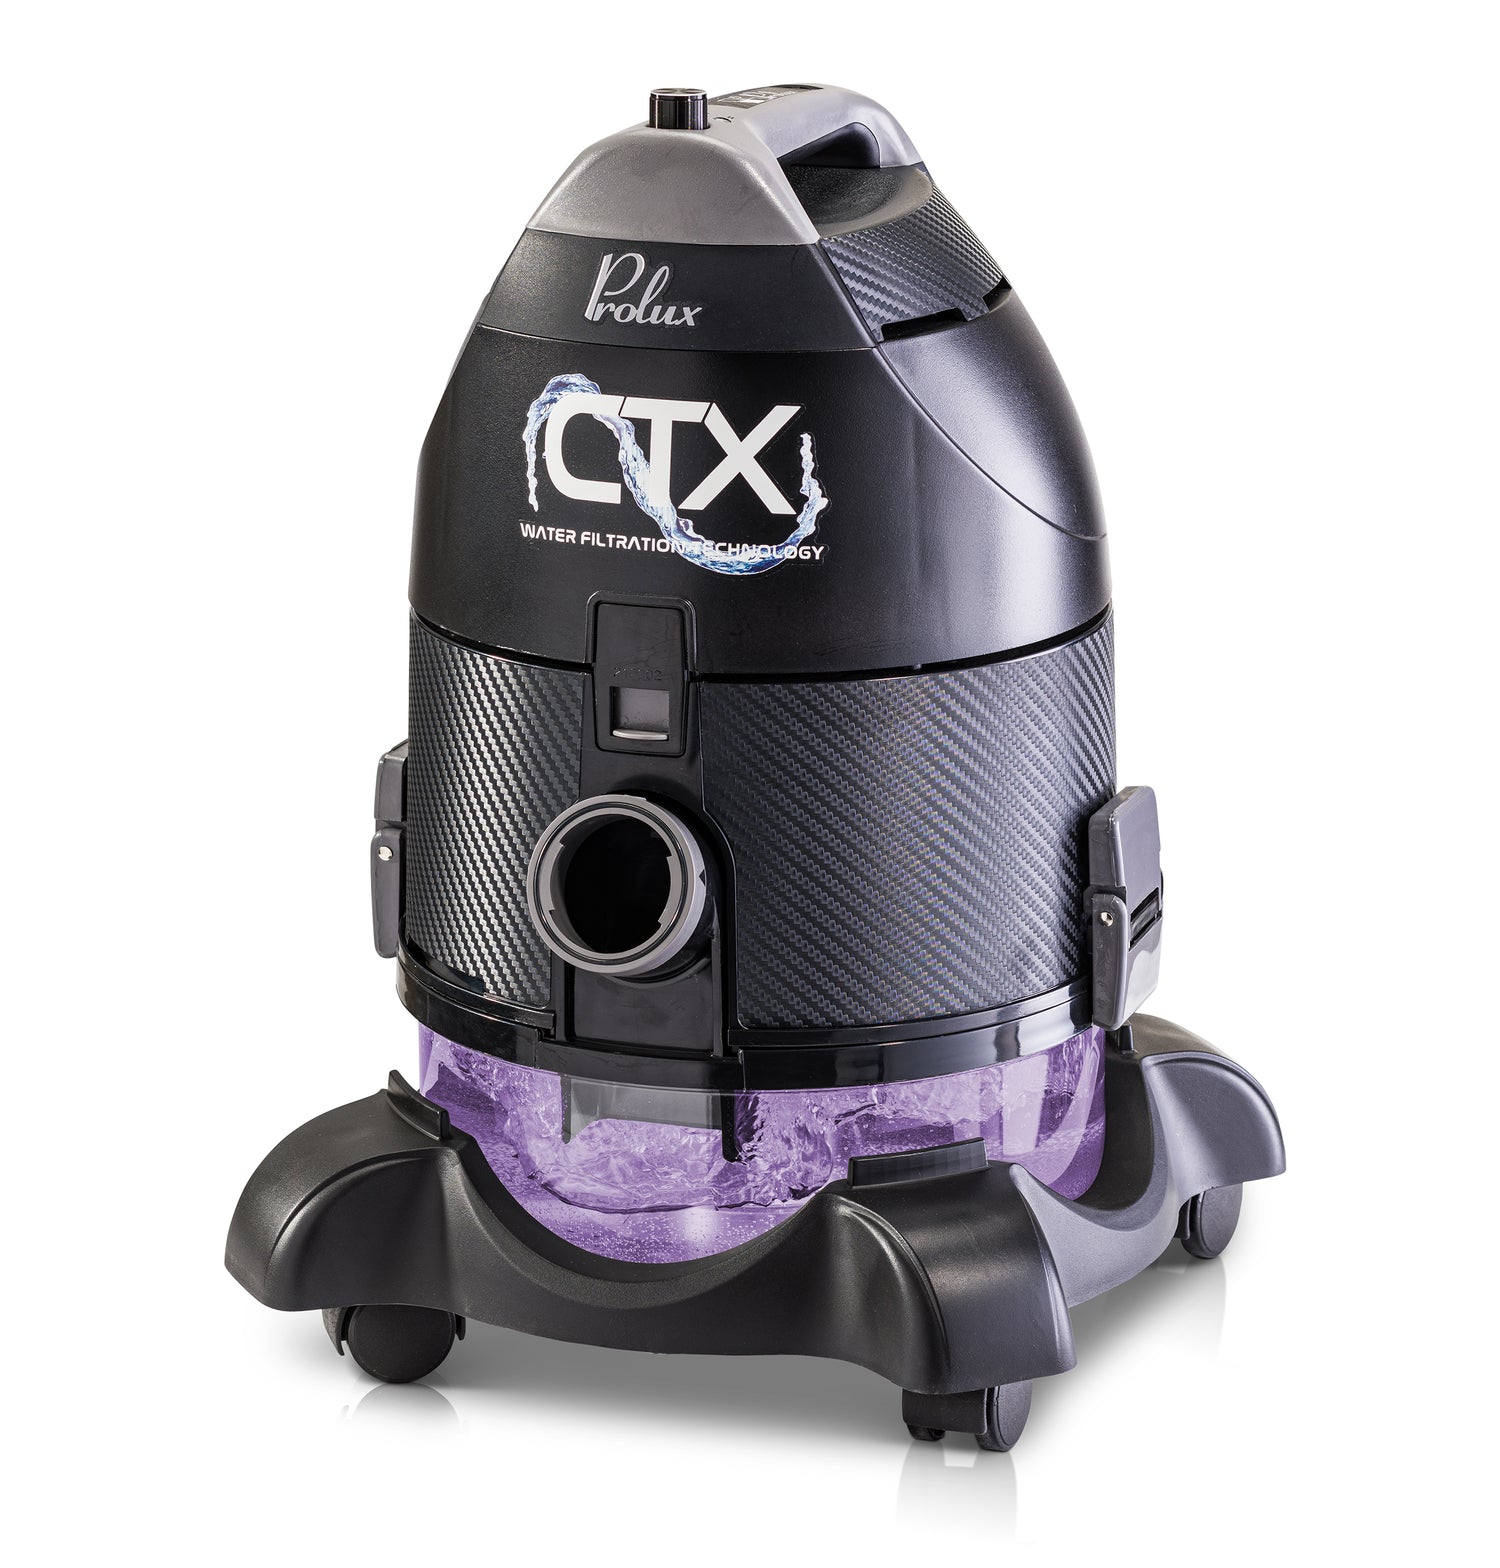 Prolux CTX - Aspiradora y purificador de aire, aspiradora húmeda y seca sin  bolsa con filtración de agua, tecnología avanzada de limpieza de aire y